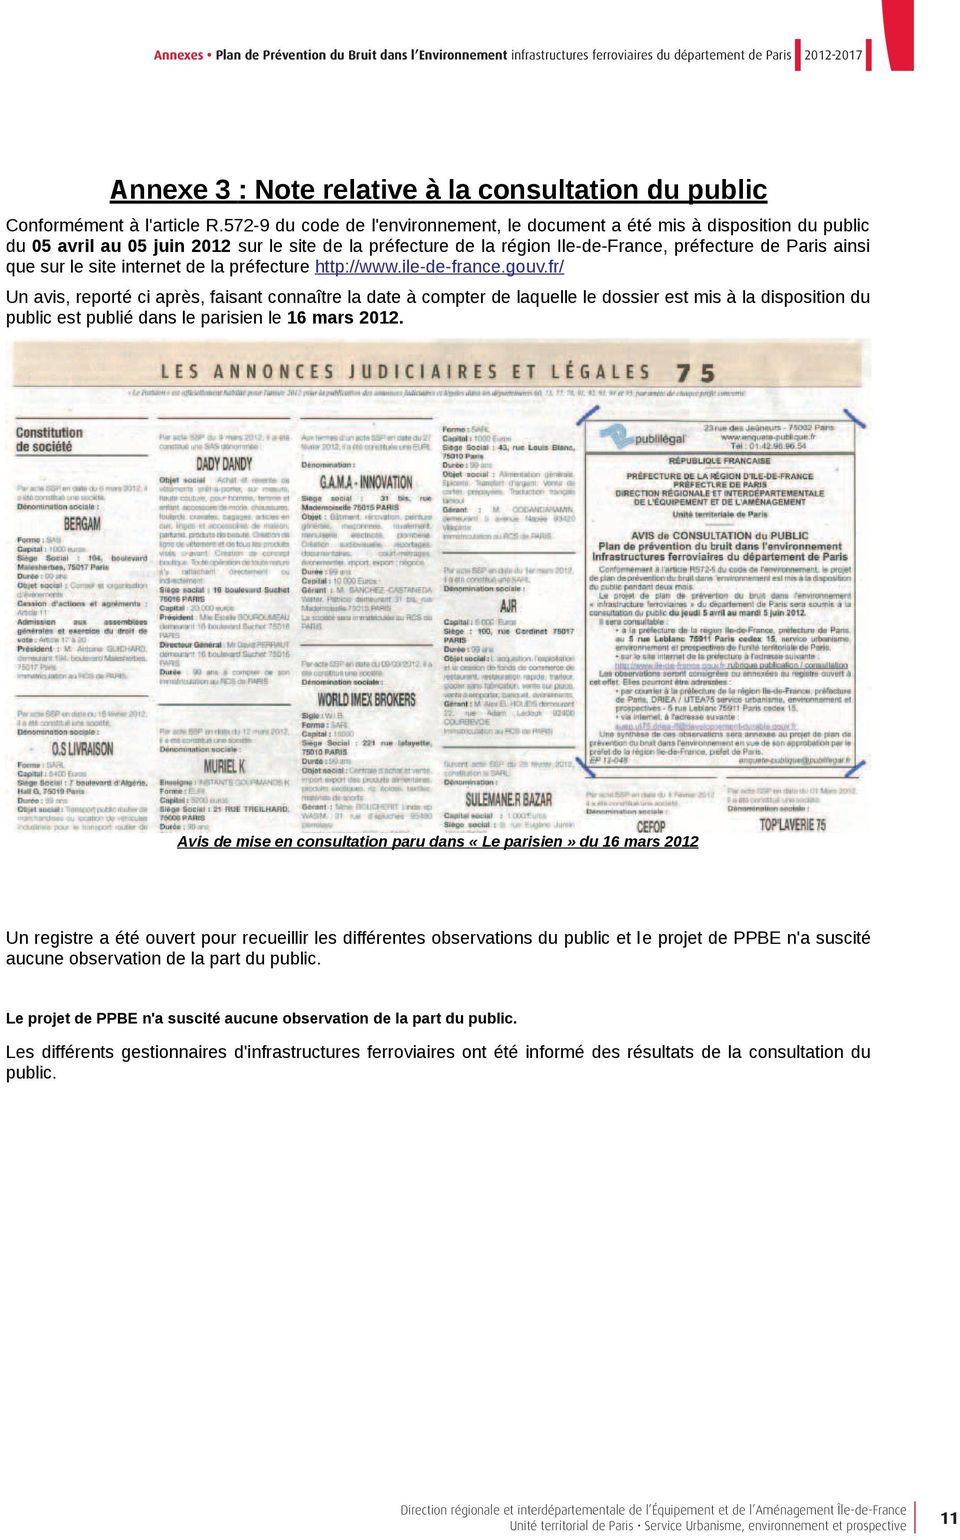 le site internet de la préfecture http://www.ile-de-france.gouv.